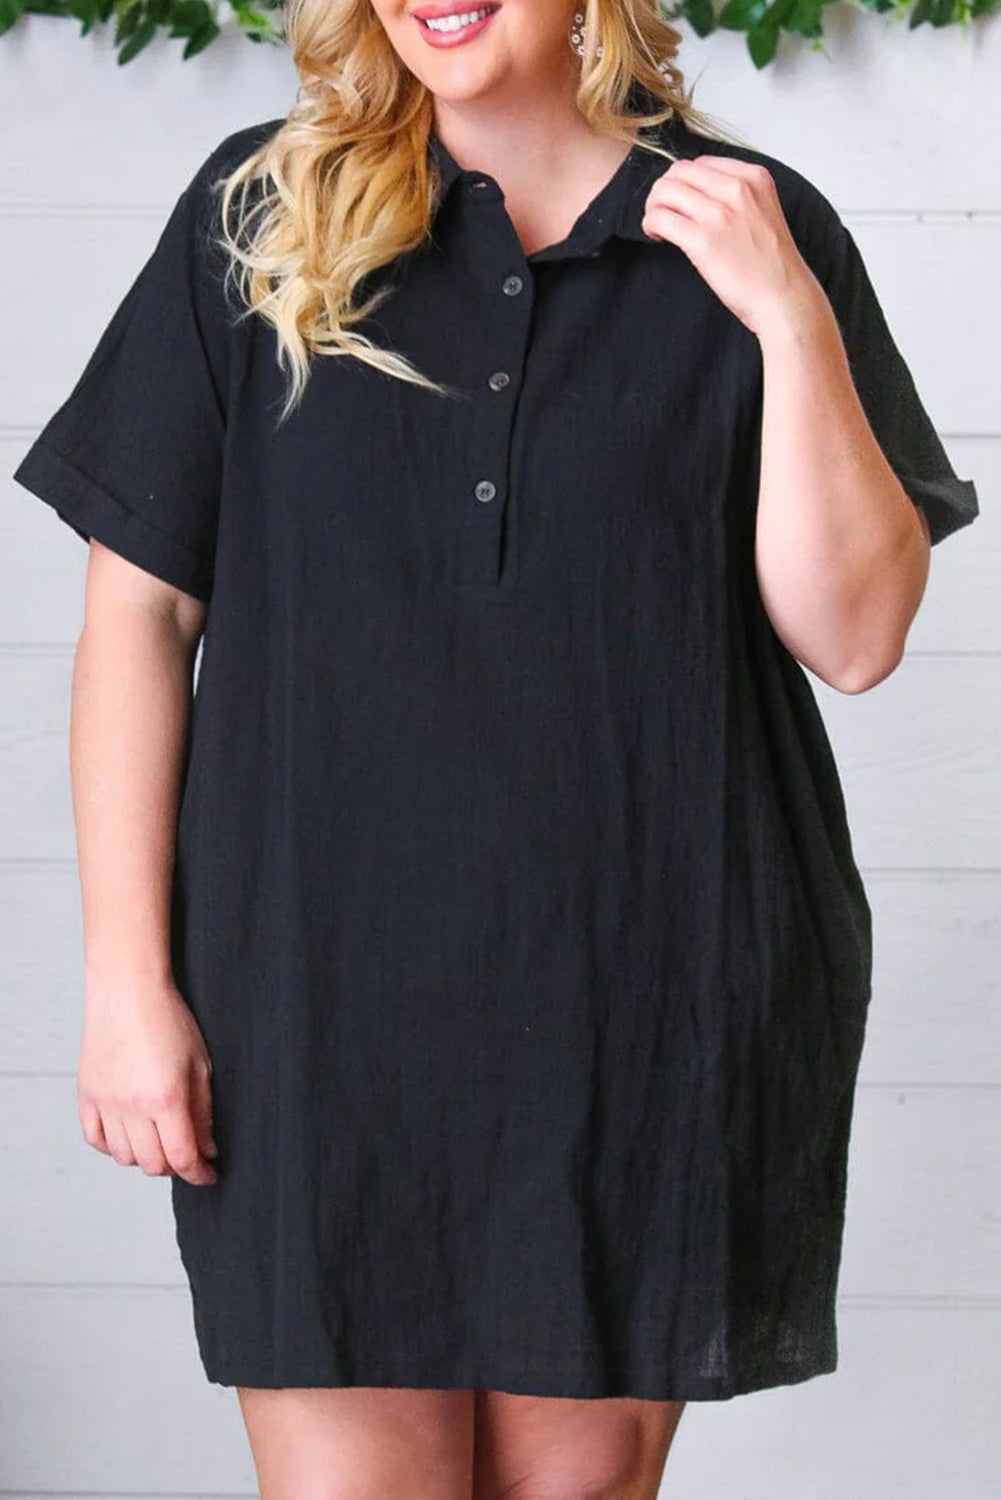 Schwarzes, kurzärmliges Etuikleid mit Hemdkragen und Knöpfen in Übergröße